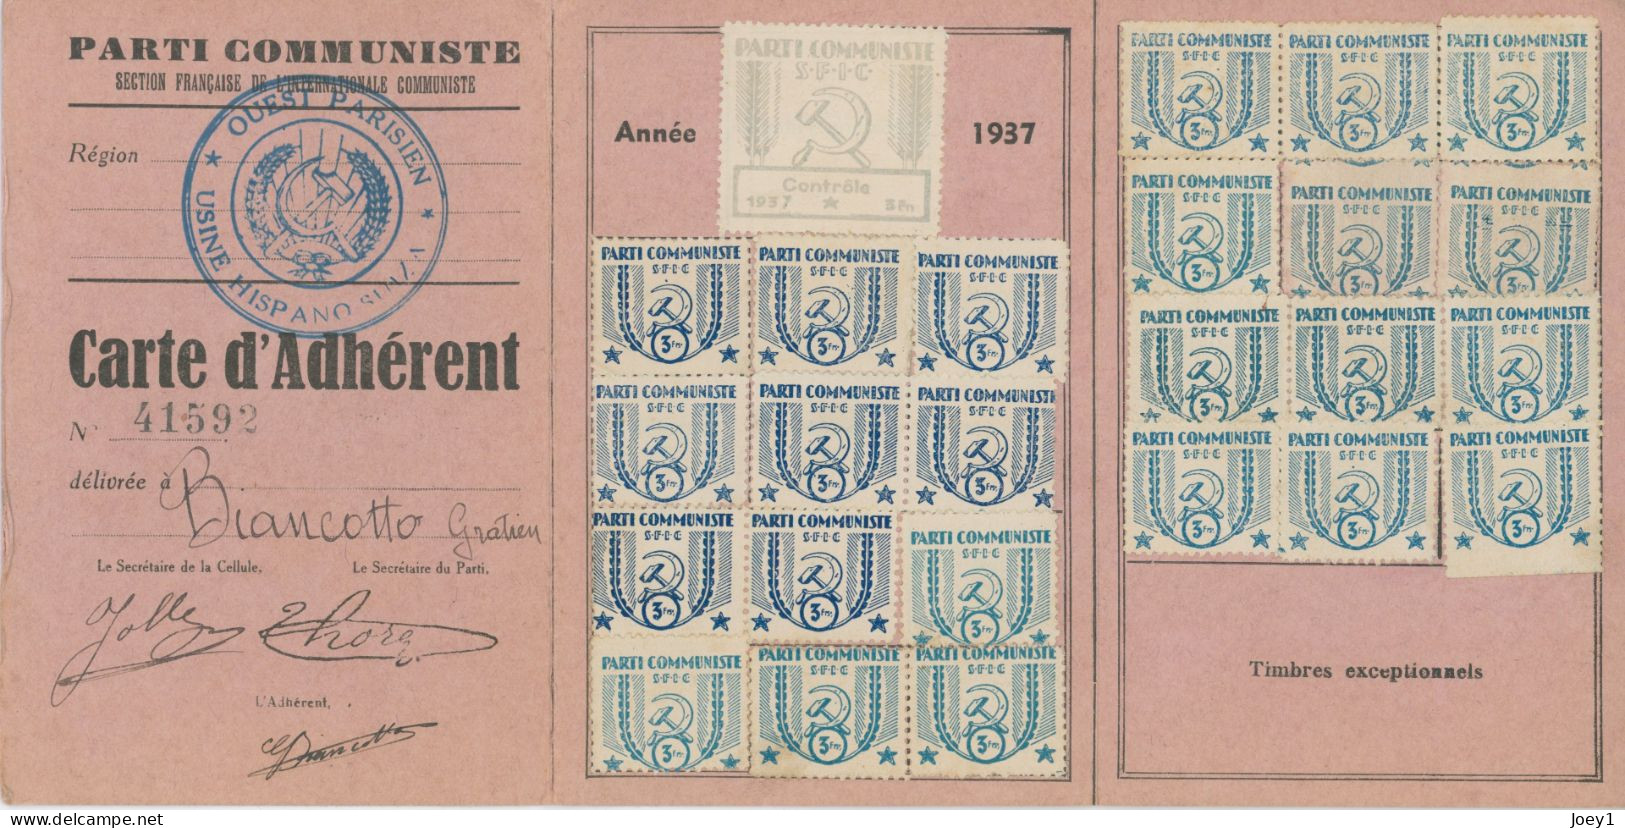 Carte D'adhésion Au Parti Communiste Français En 1937 - Membership Cards